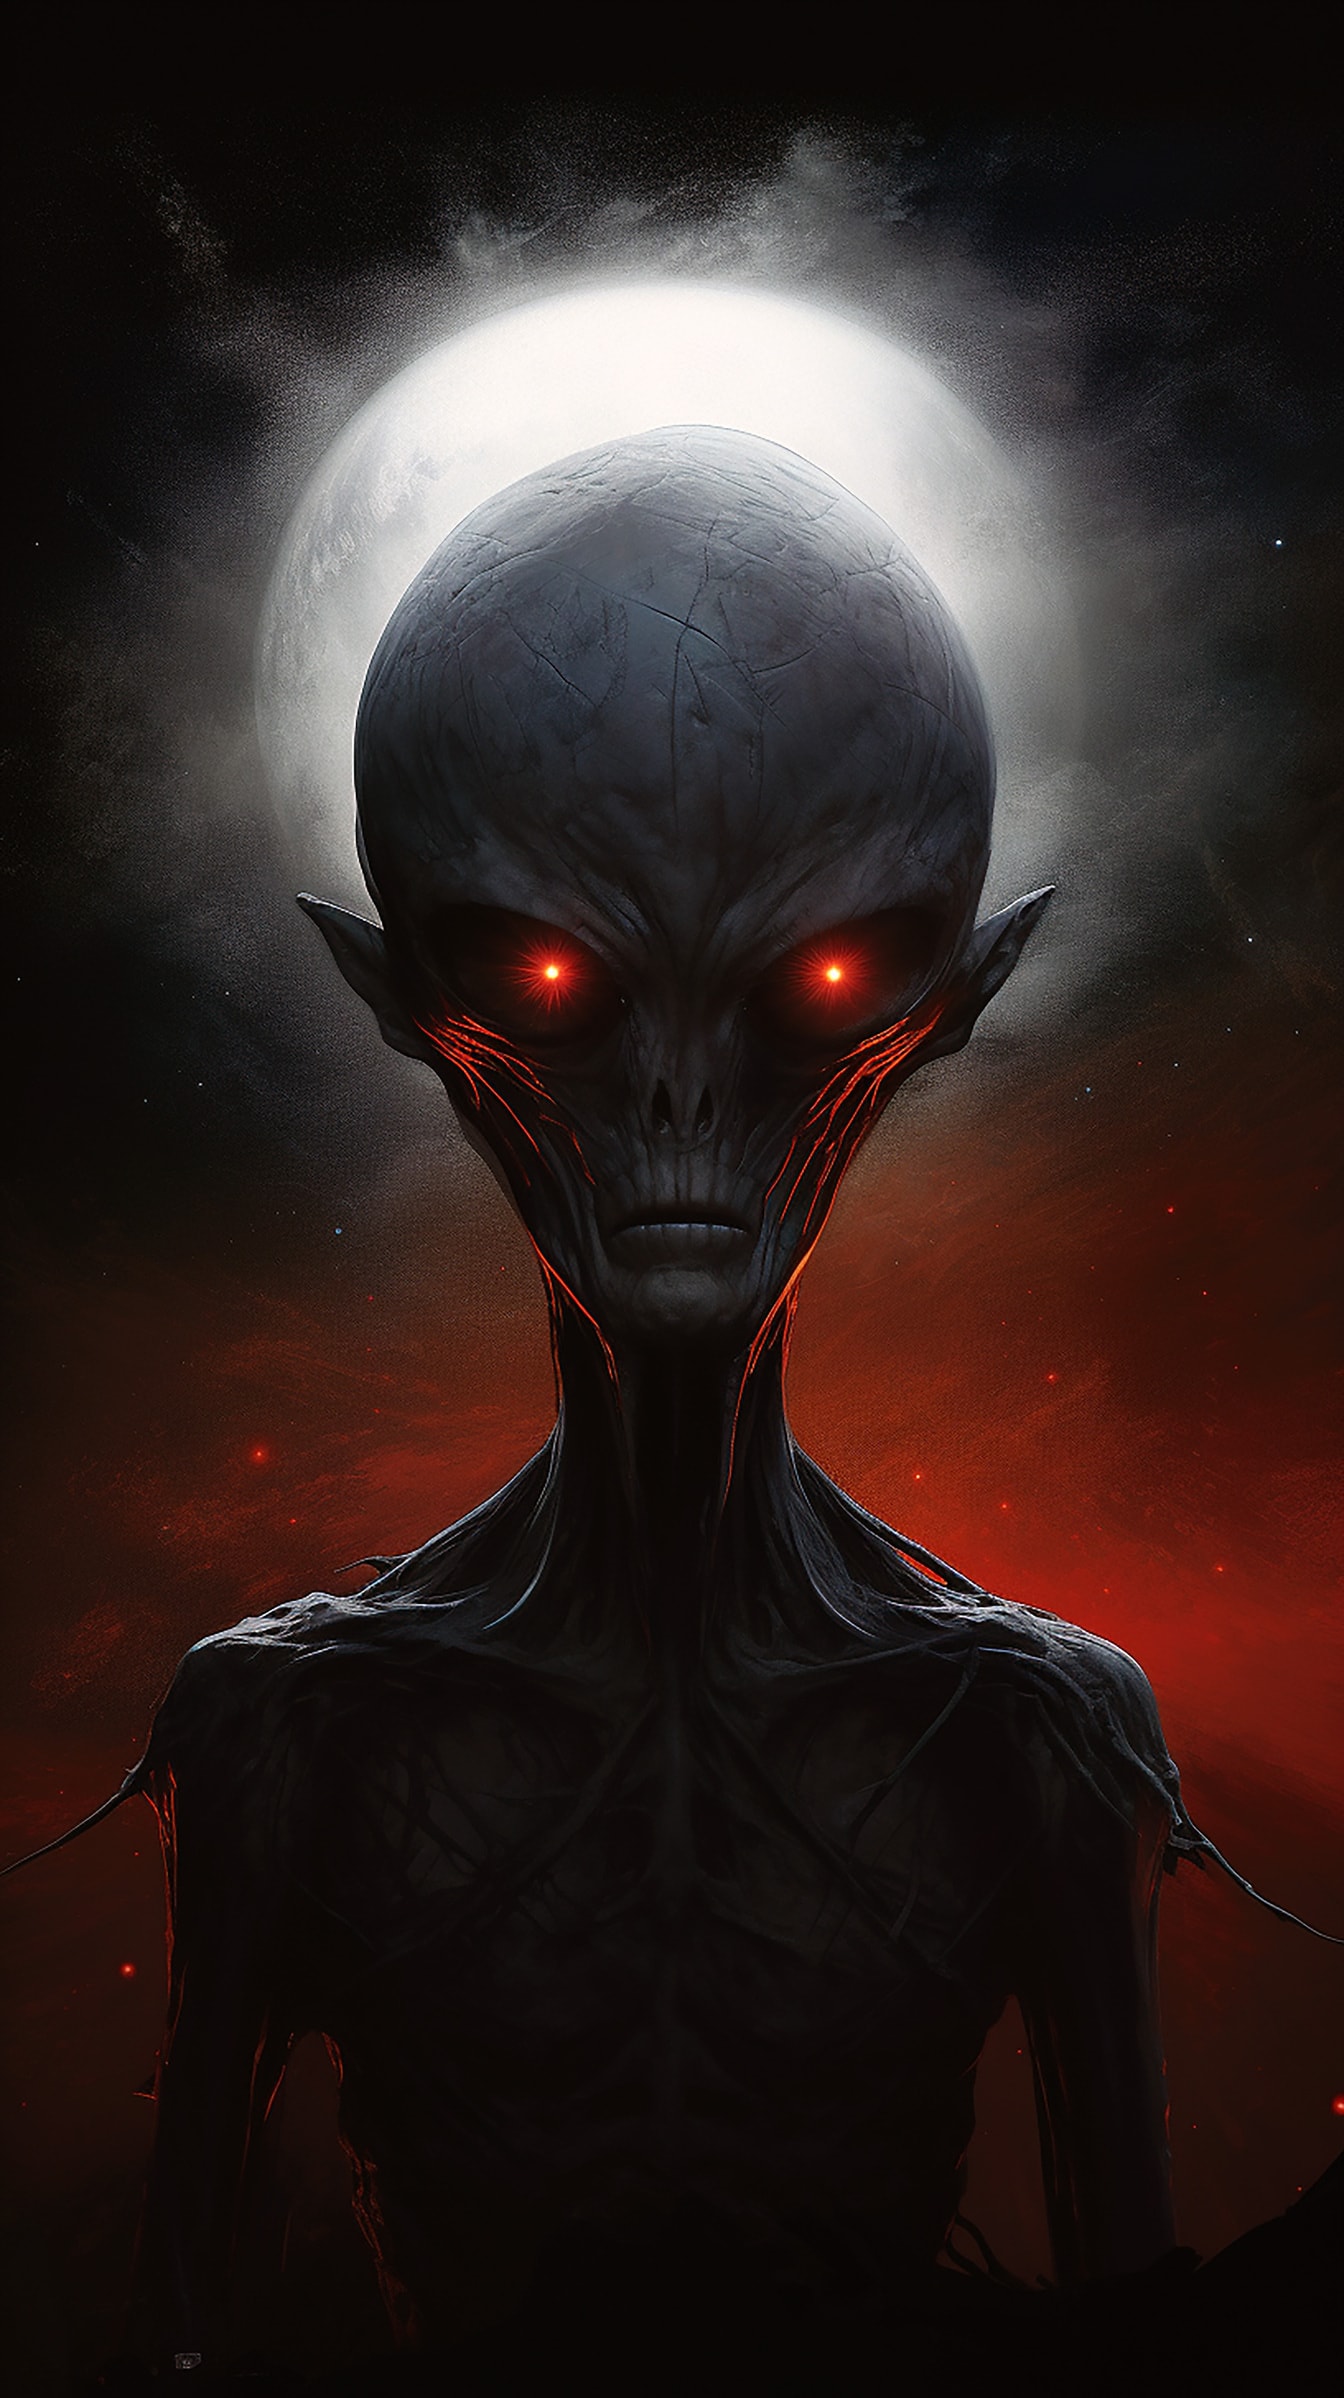 Skräckporträtt av utomjording med mörkröda ögon och smal kropp